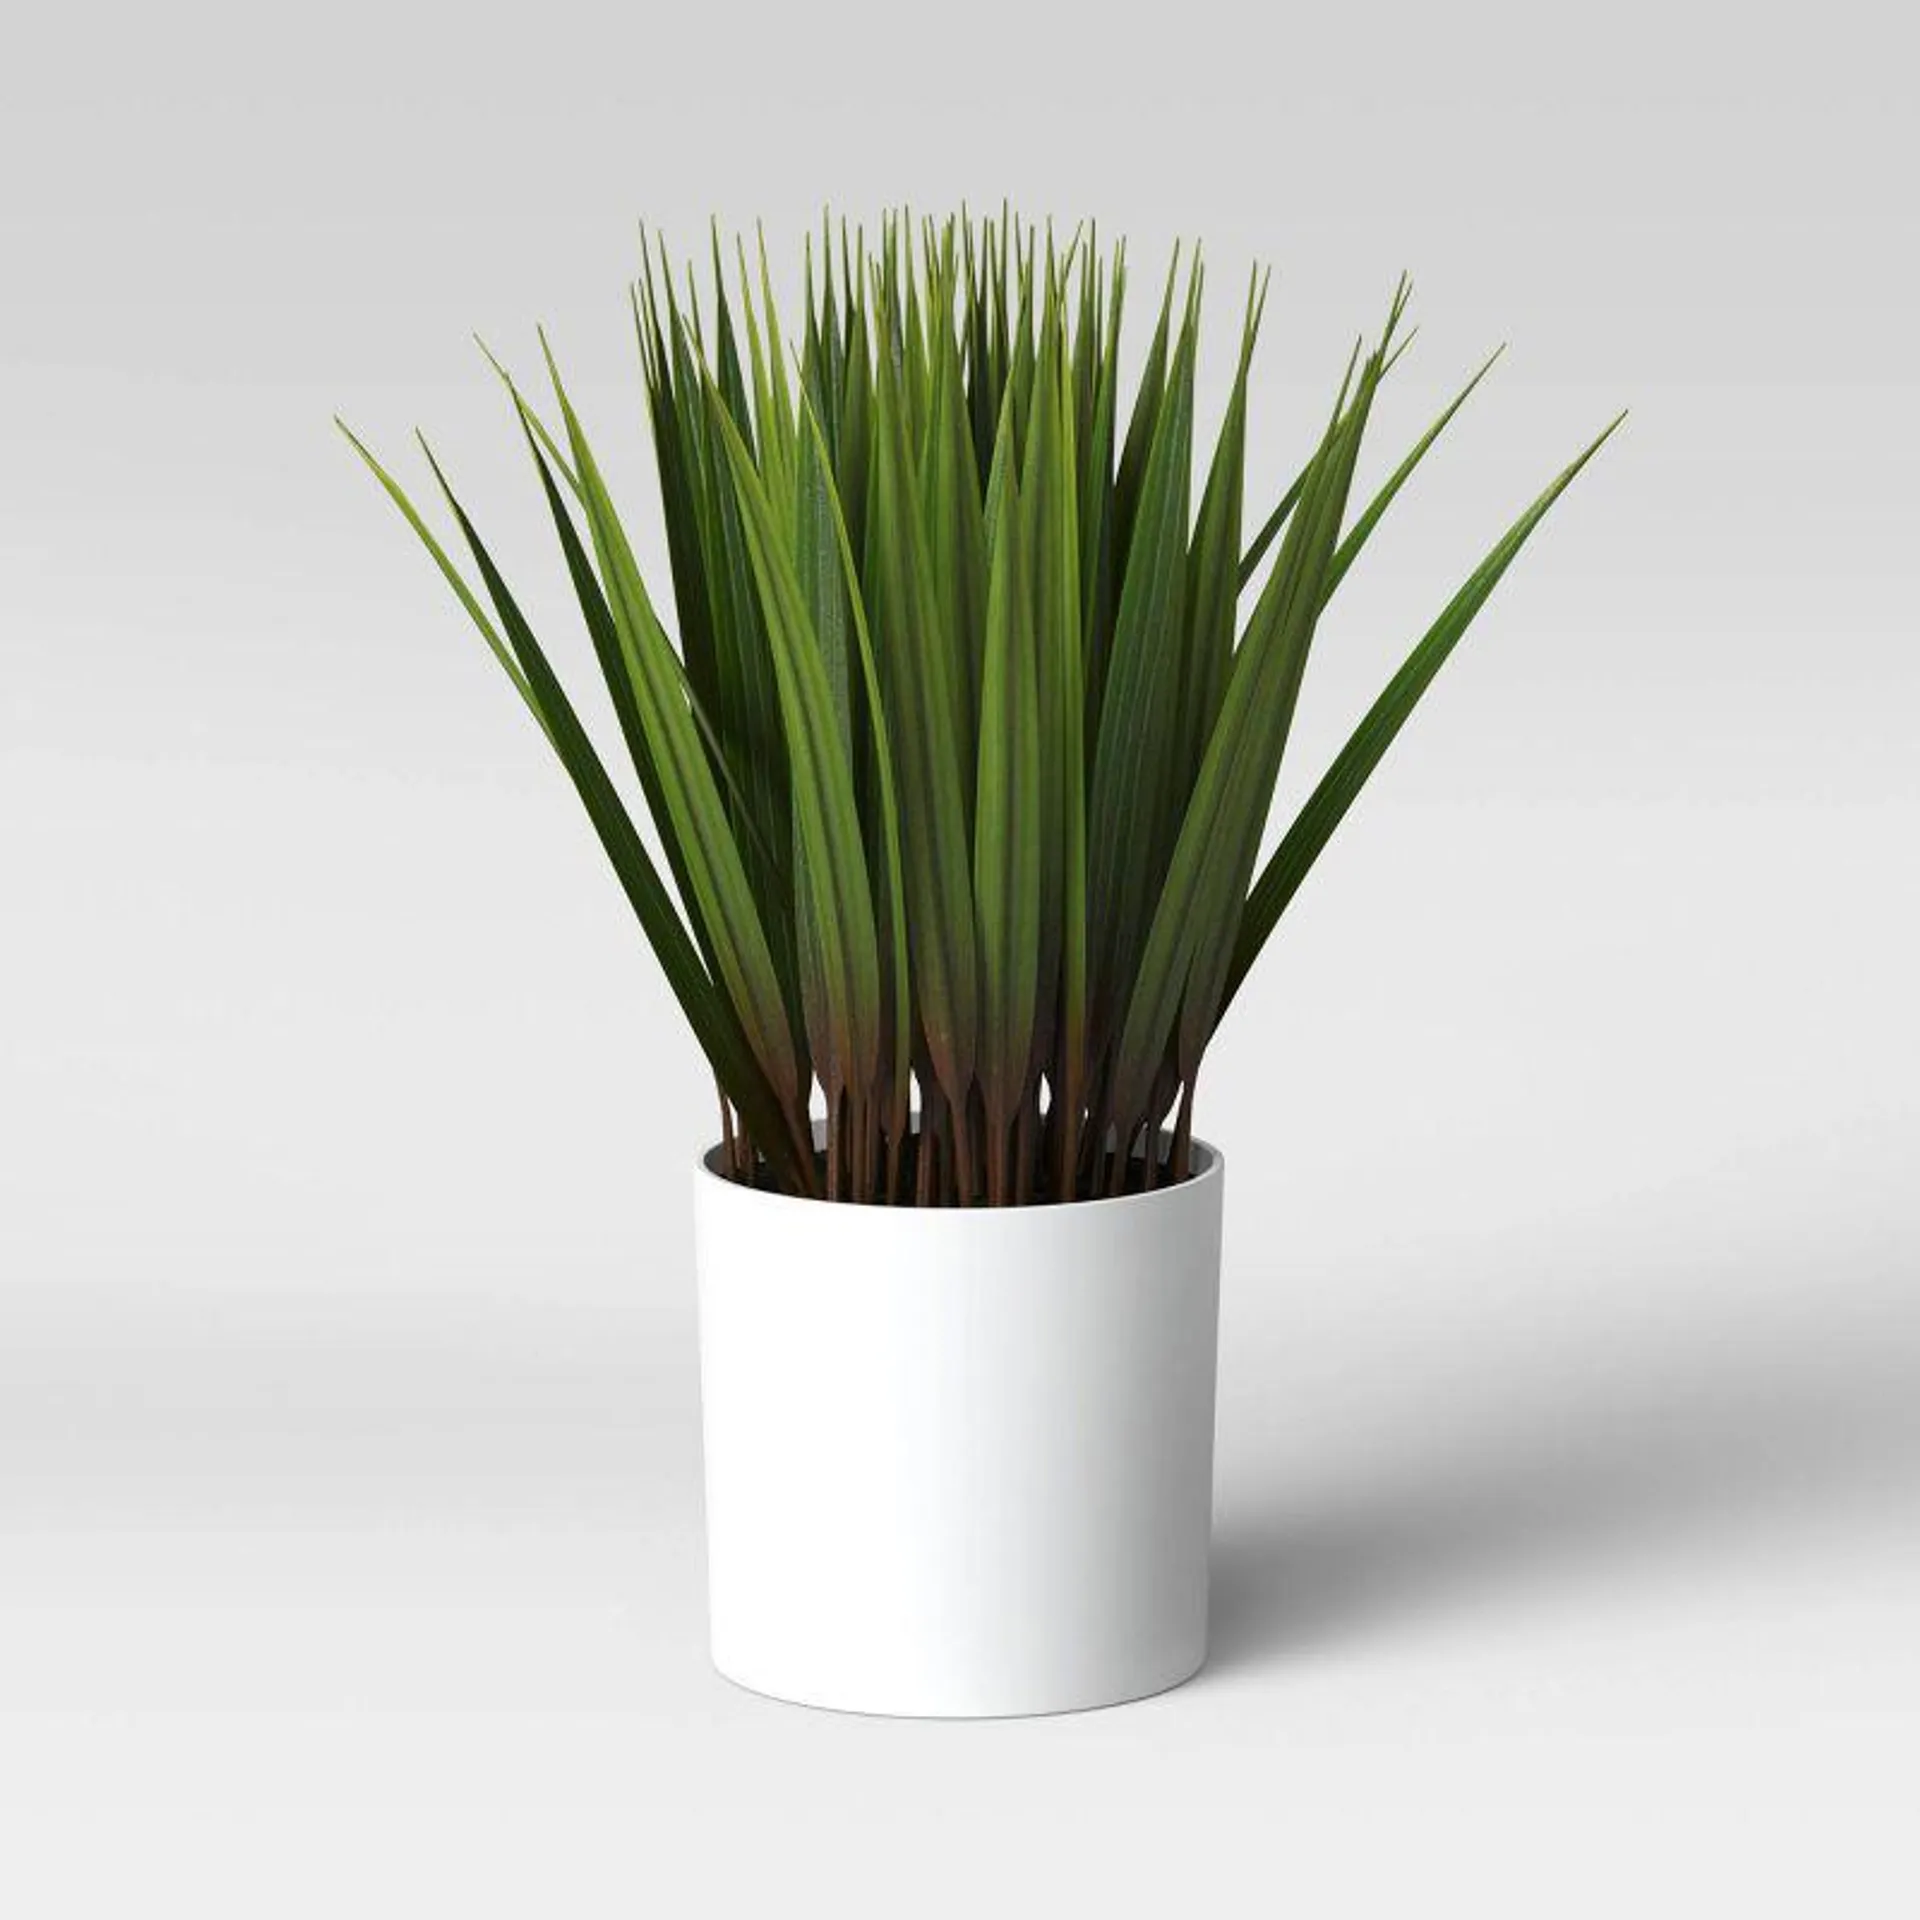 10" x 6" Artificial Grass Arrangement - Threshold™